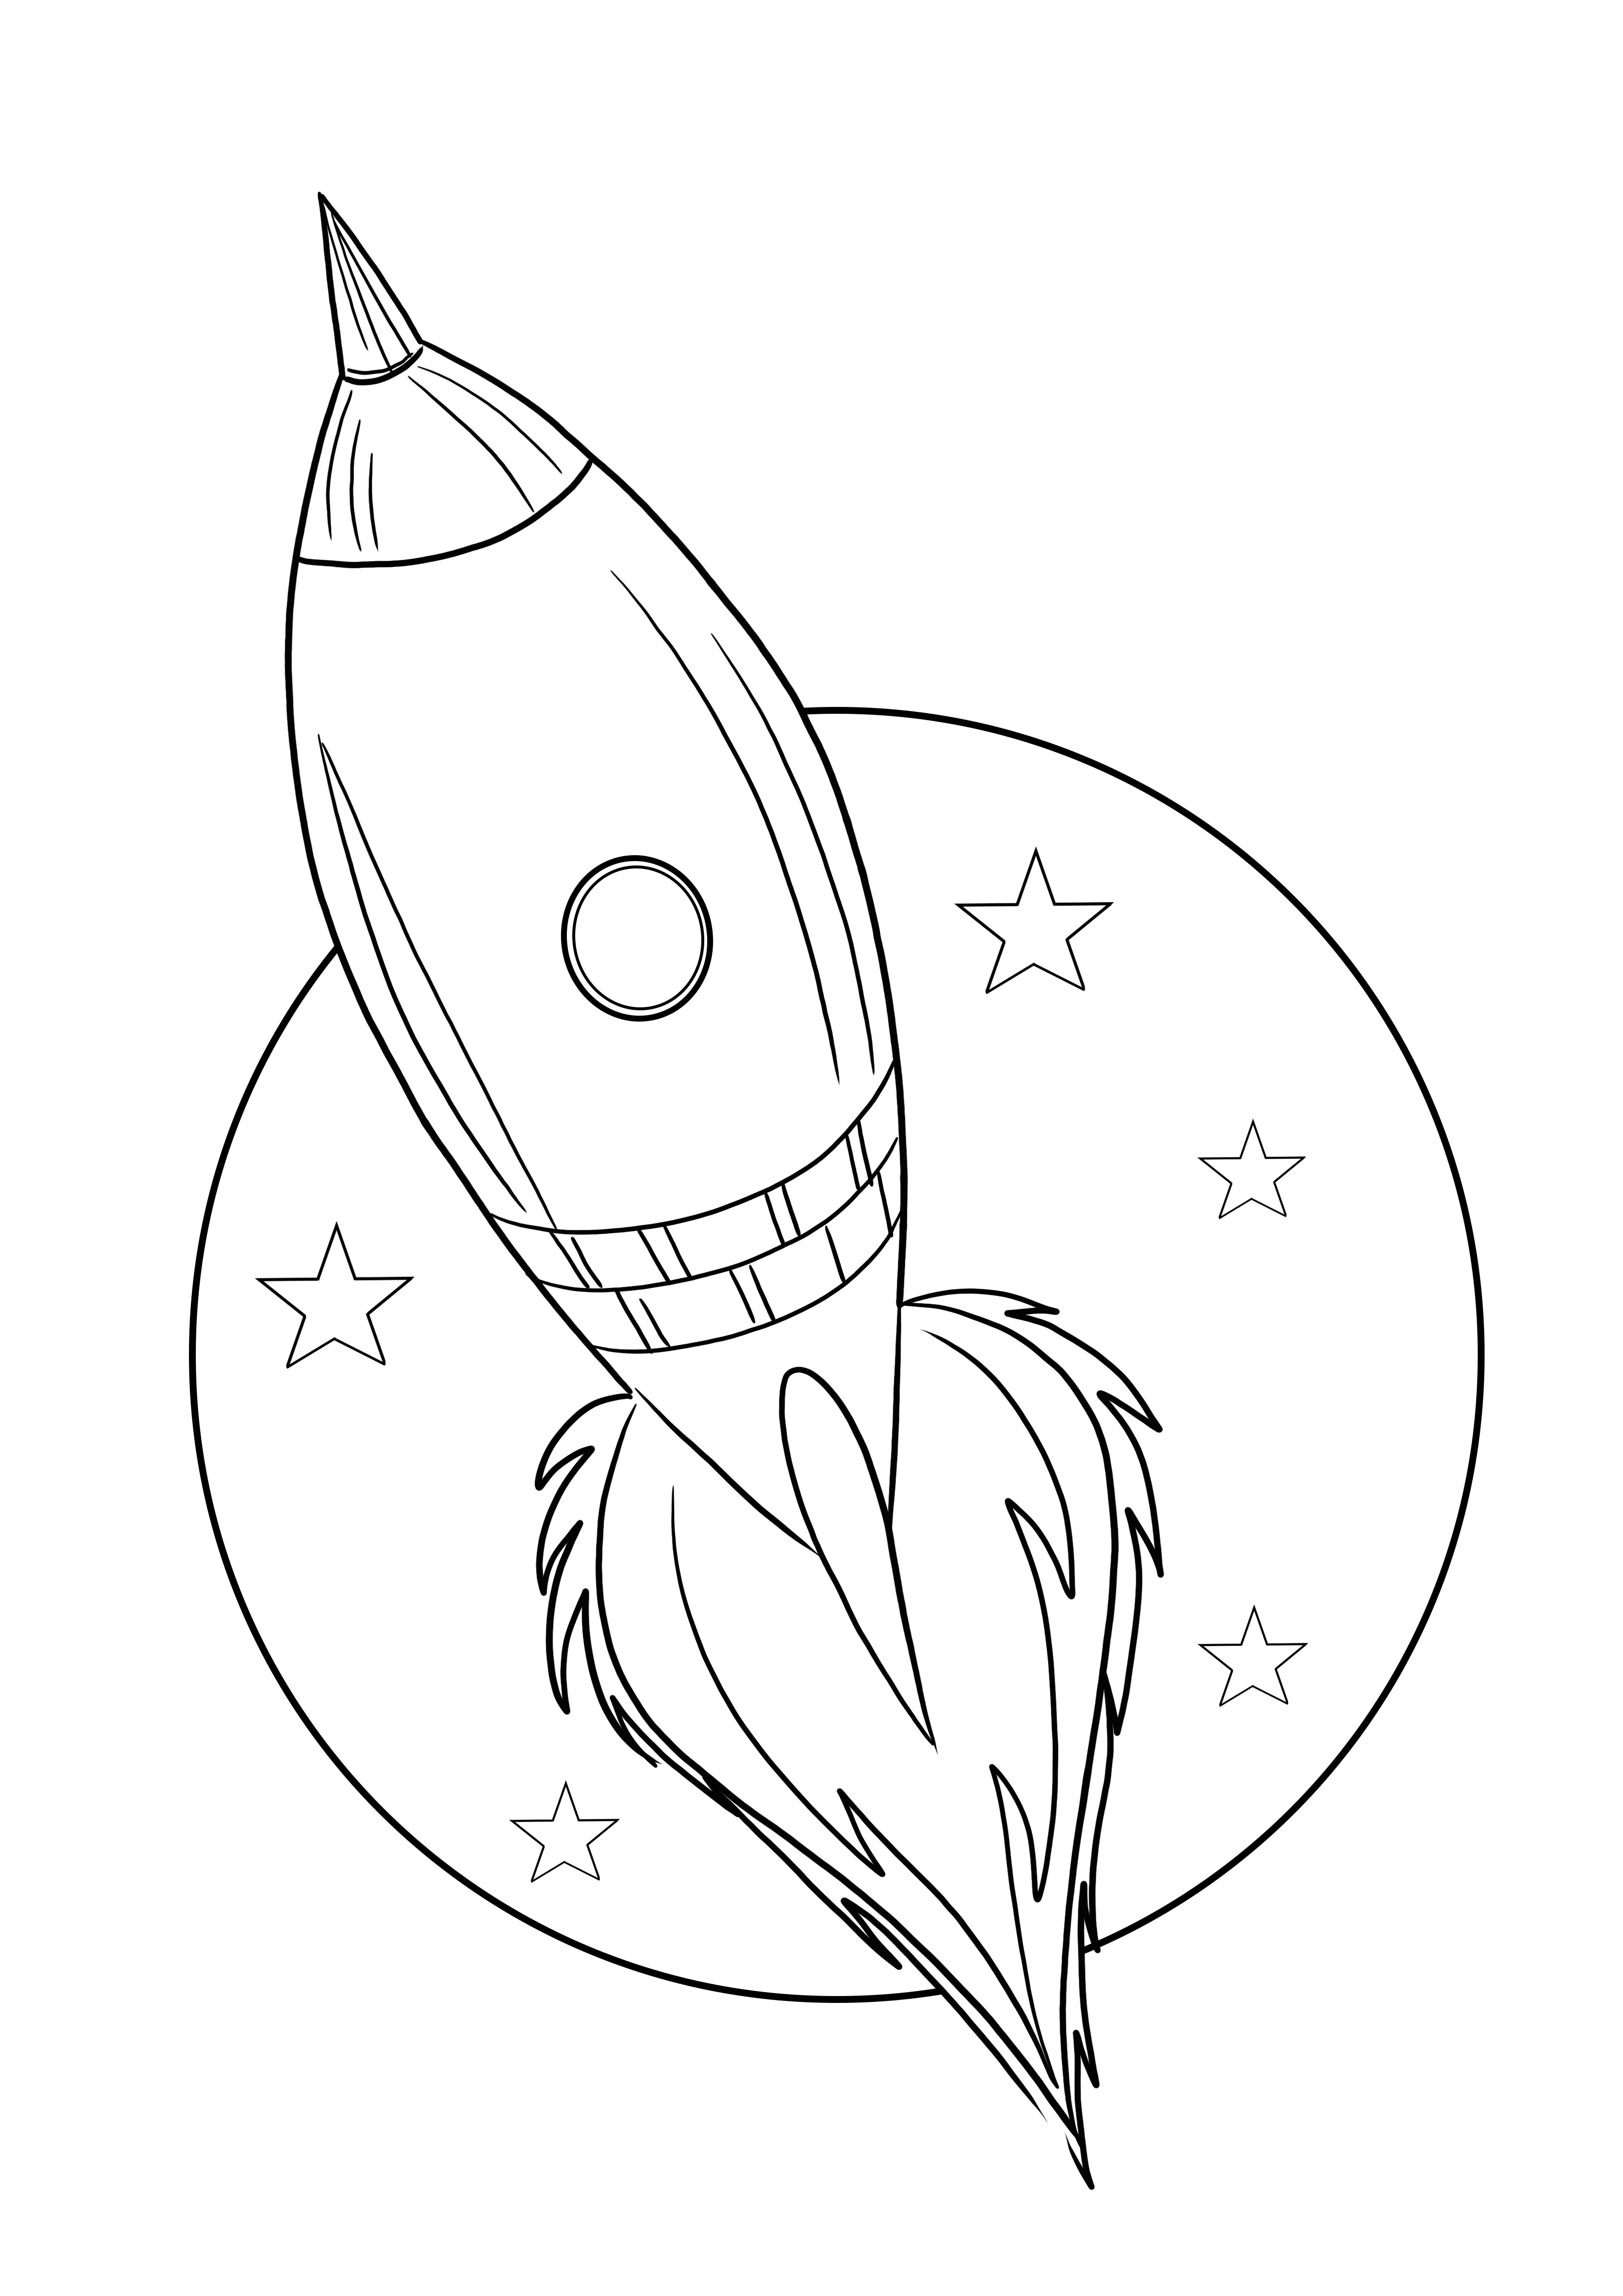 Disegno da colorare Astronave-Luna-Stelle pronto per essere stampato o scaricato